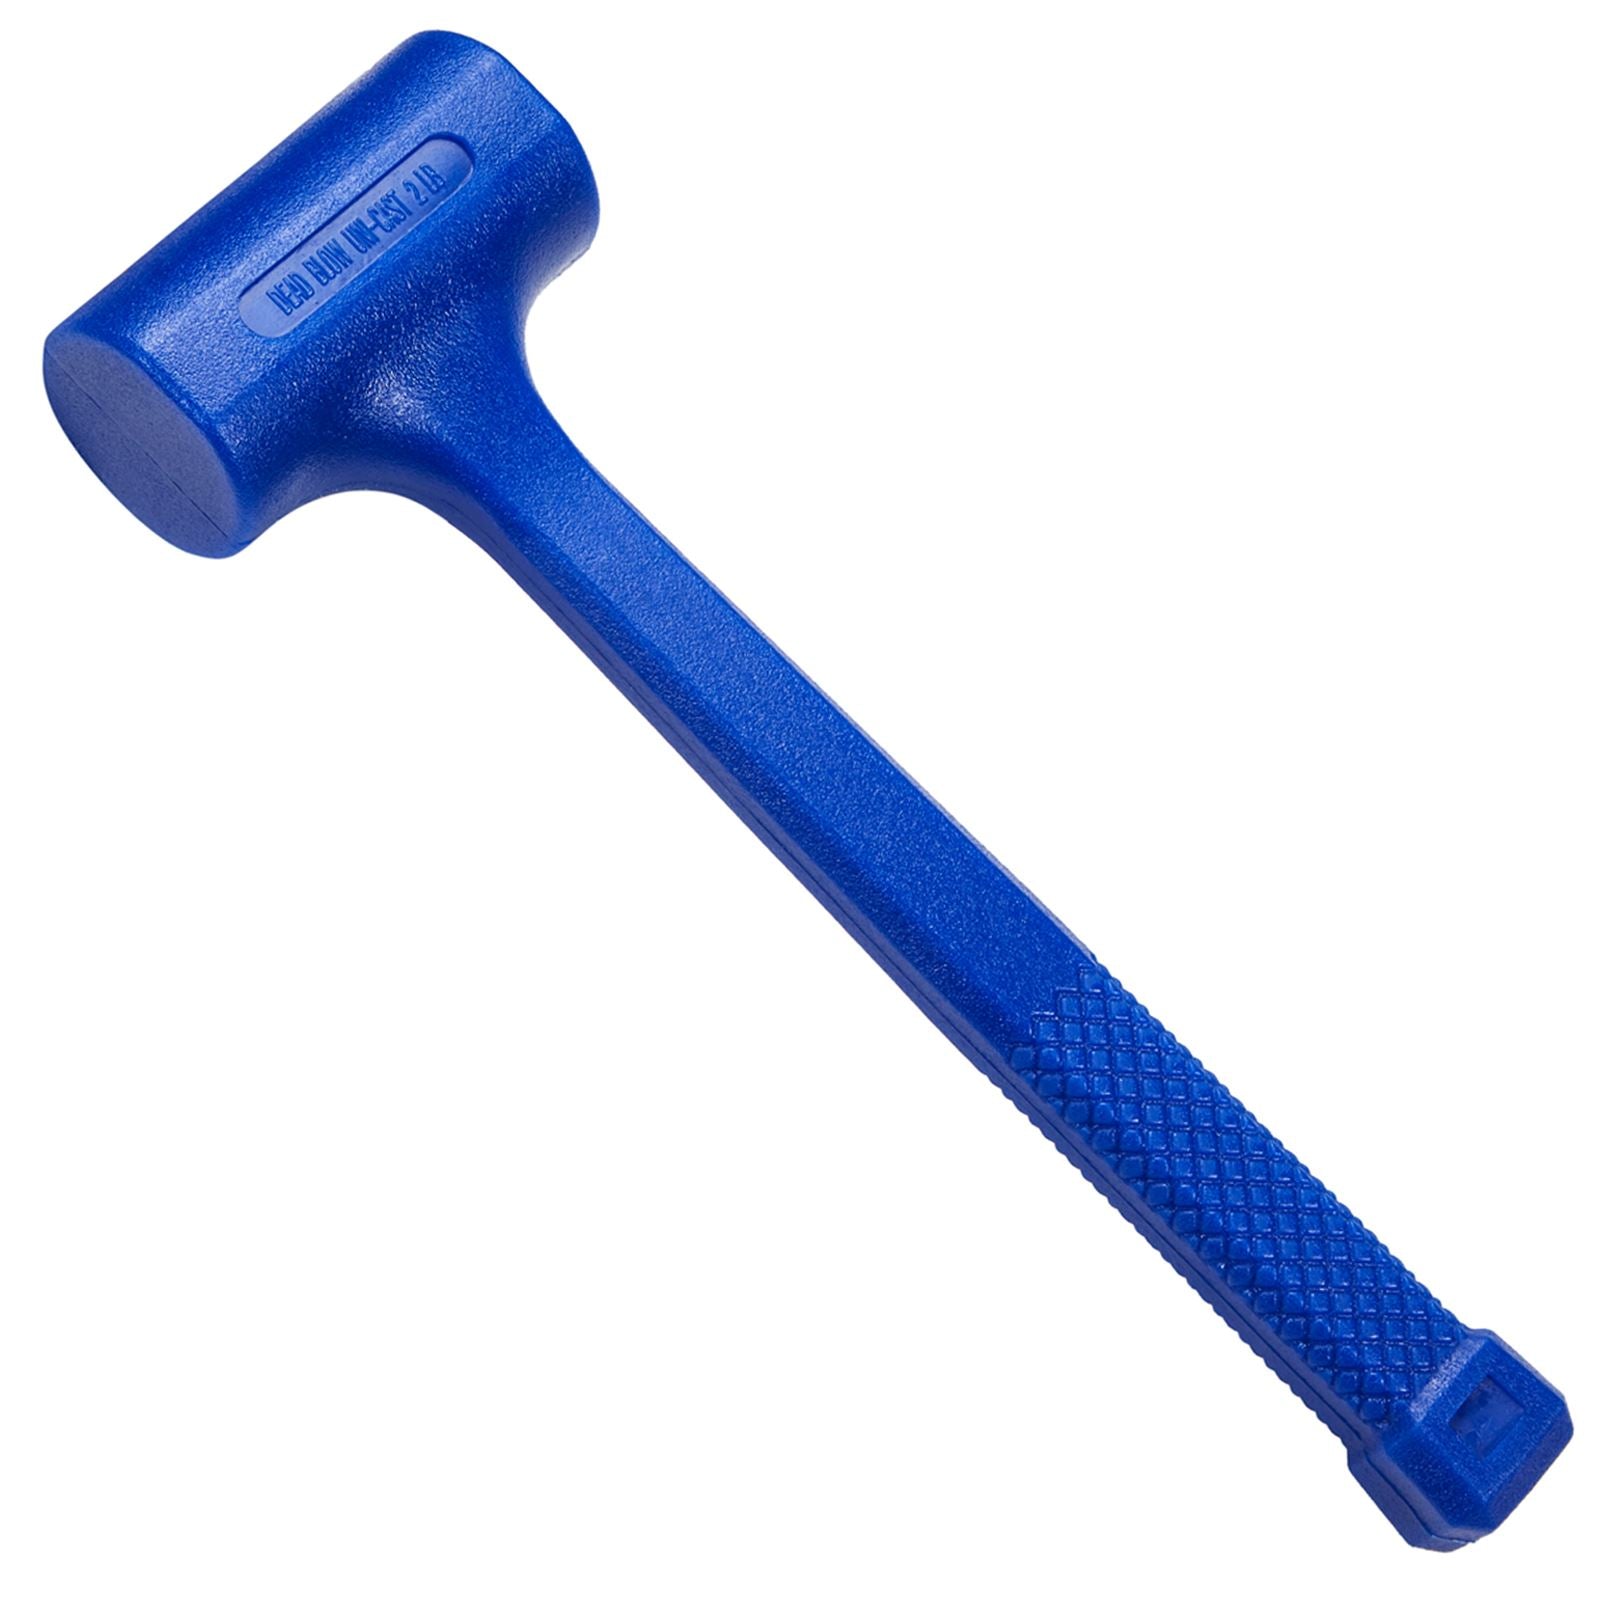 BlueSpot Dead Blow Hammer 900g